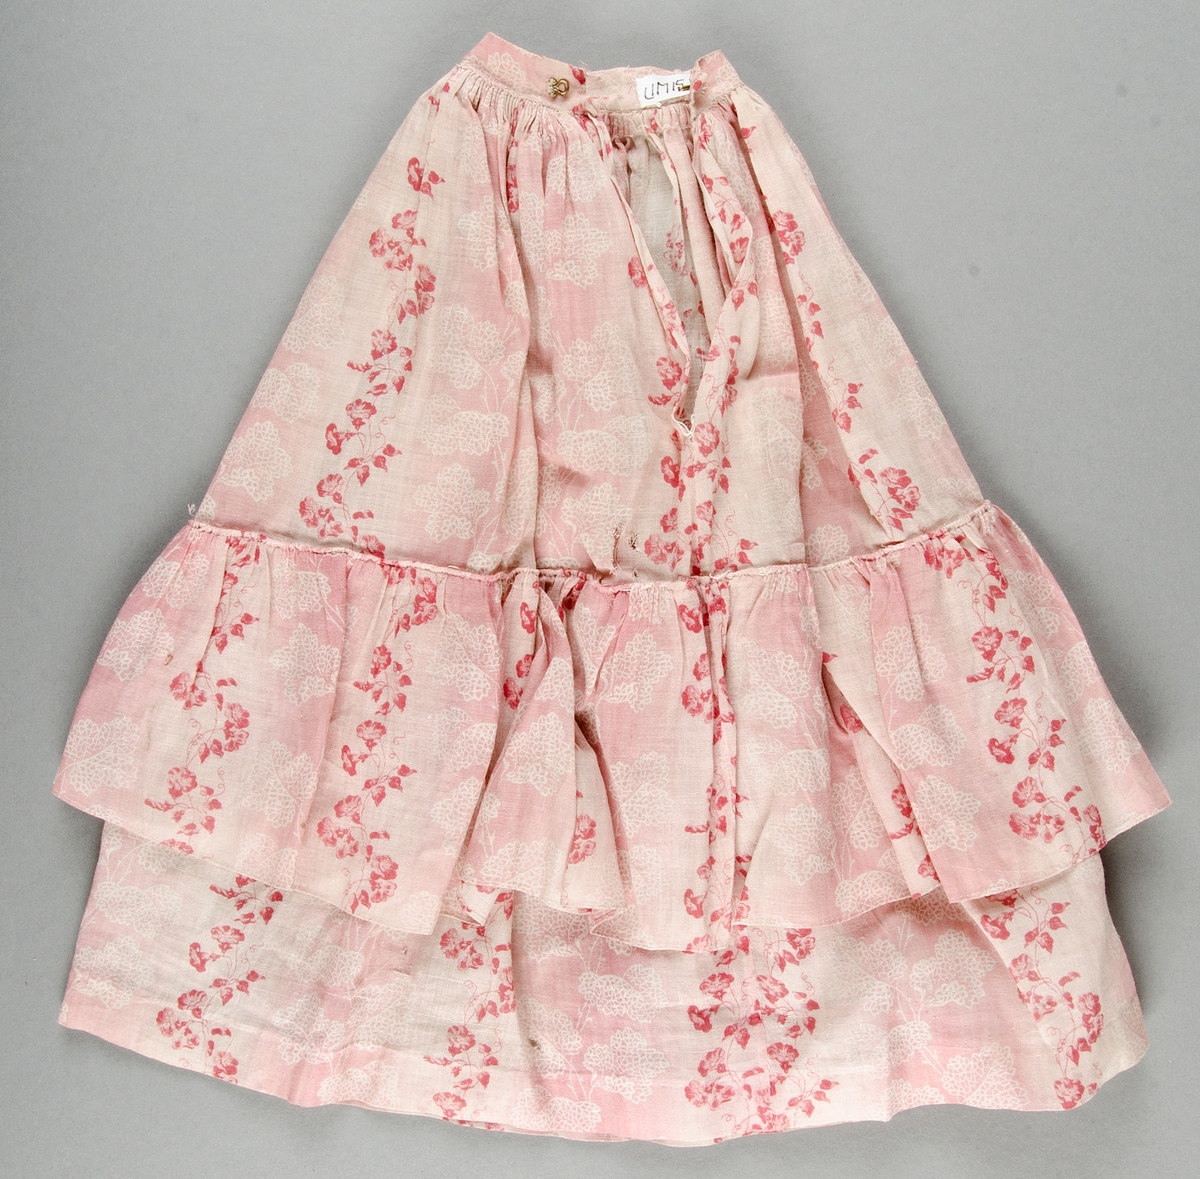 Blus och kjol av rosa- och vitrandig bomullsvoile med tryckt mönster i rött och rosa på vit botten. Livet kantat med röda ylleband.